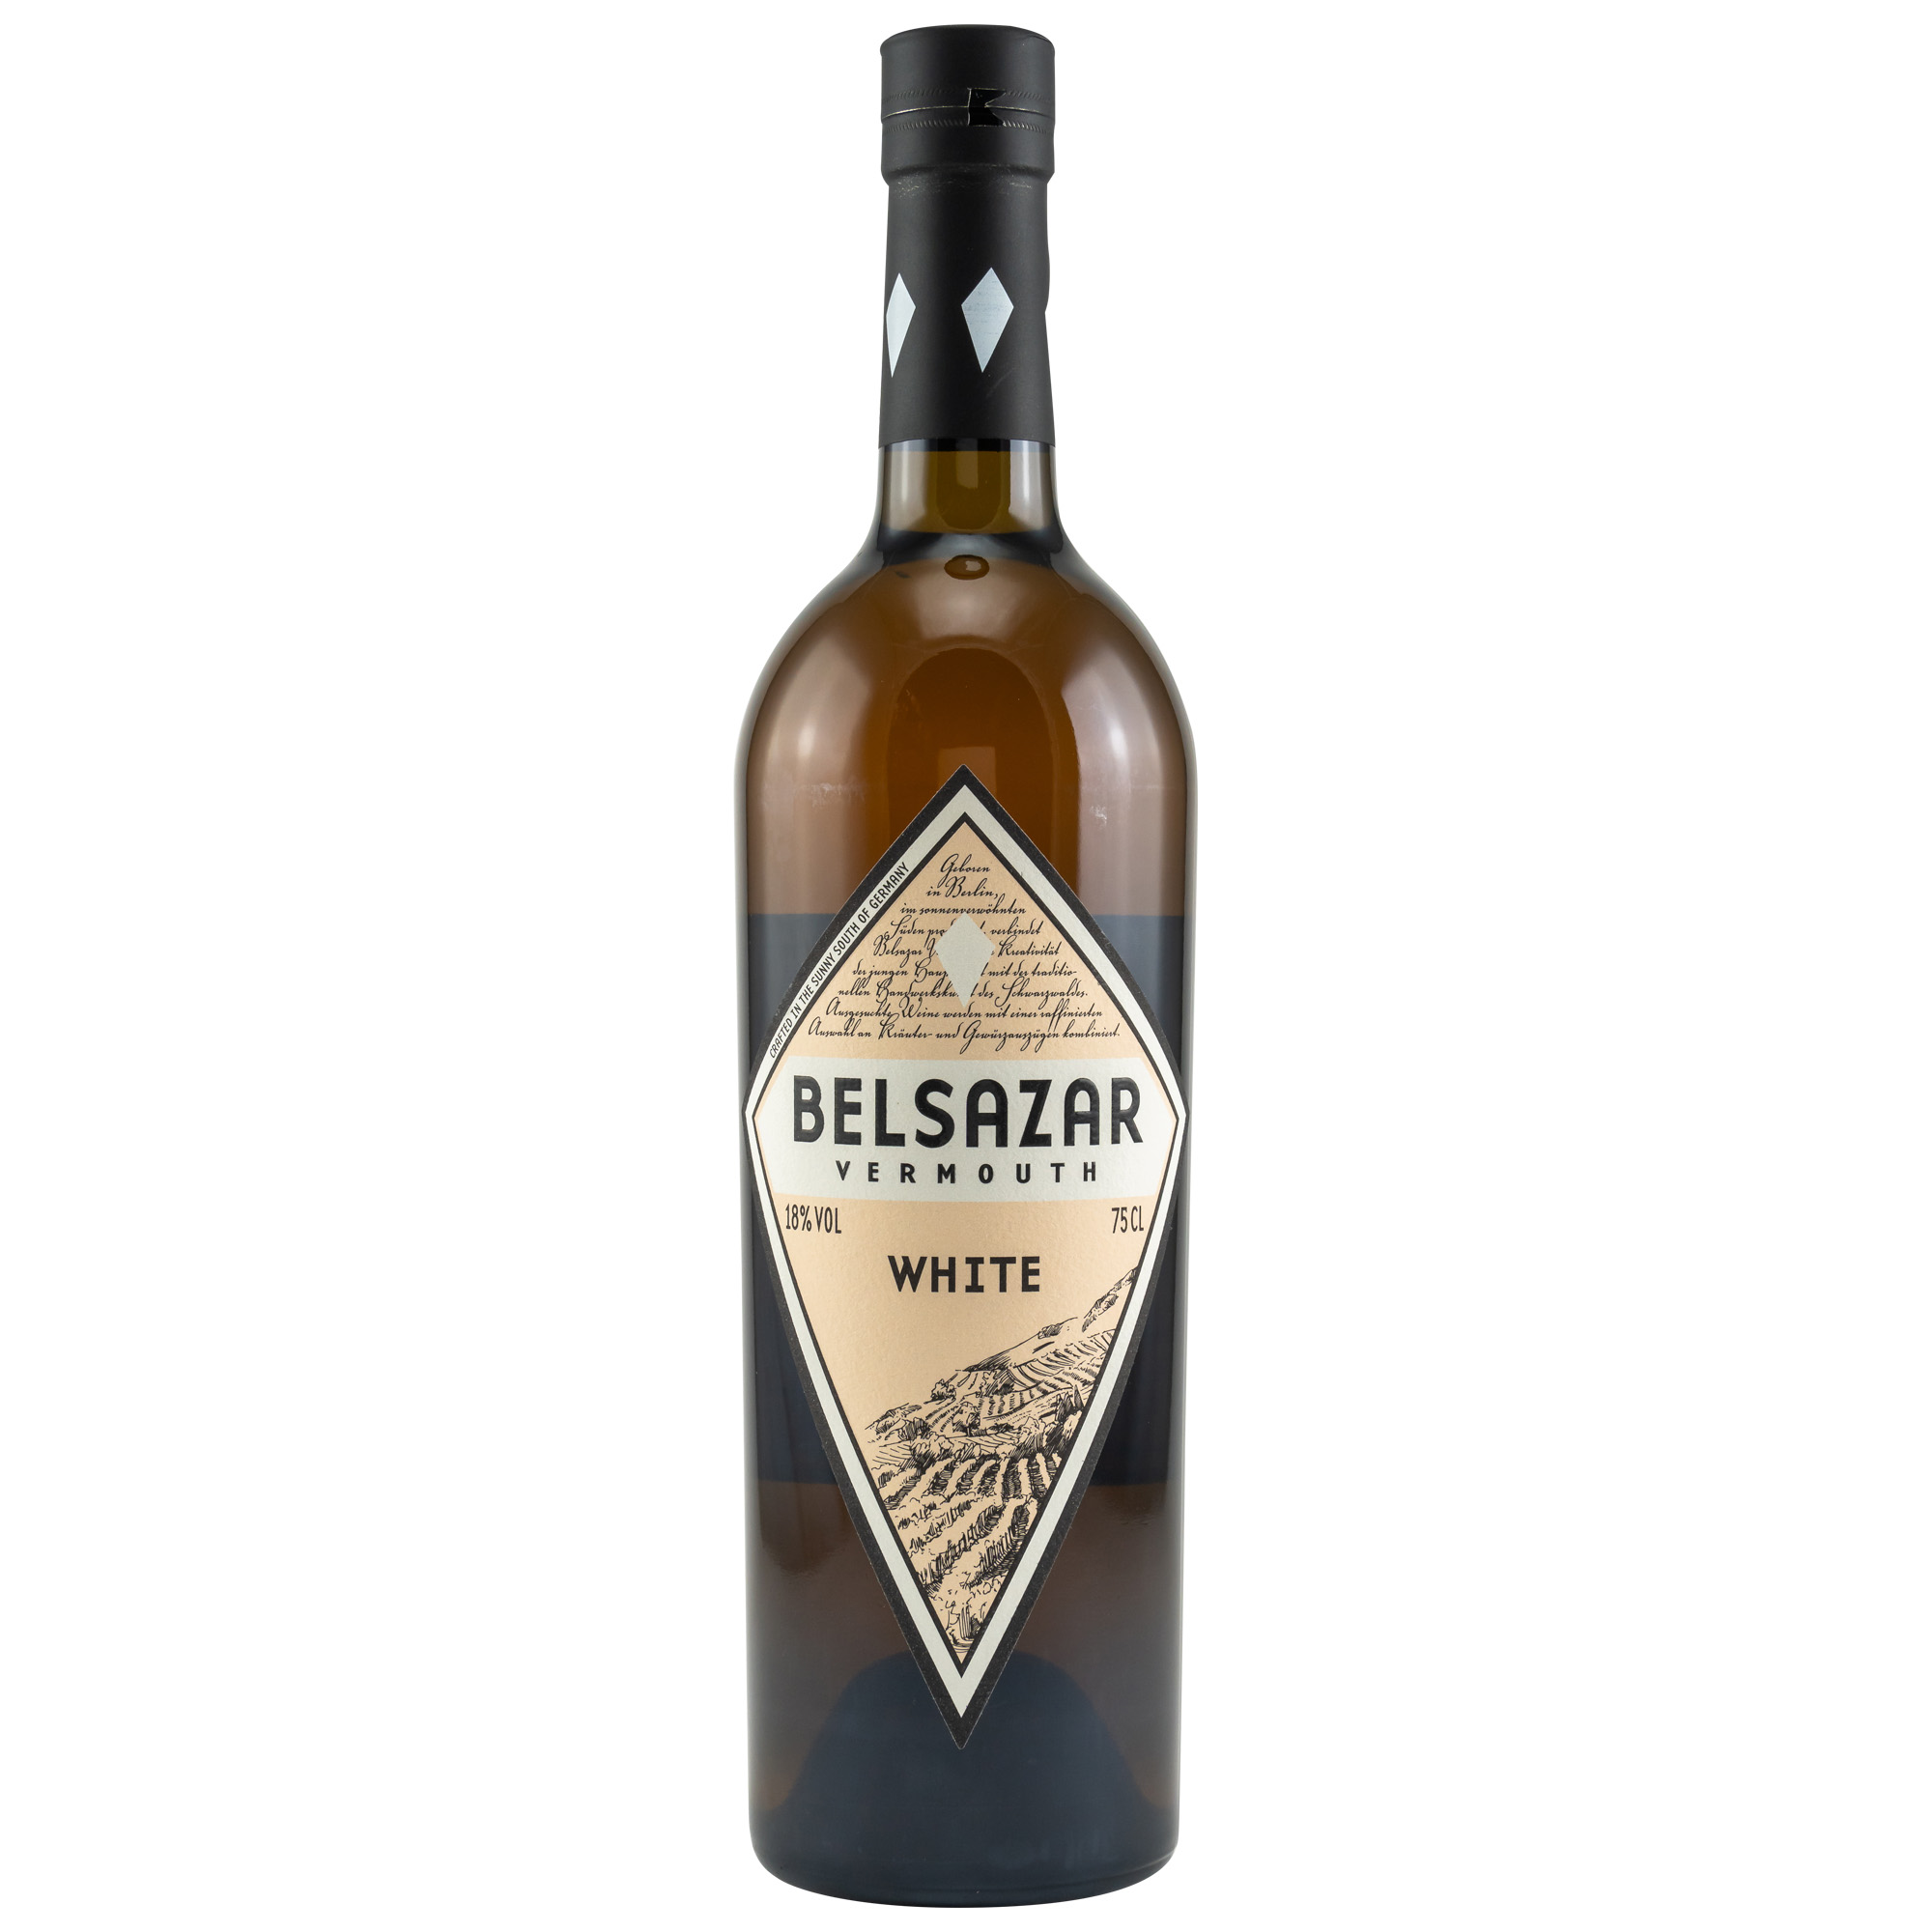 White Vermouth Belsazar